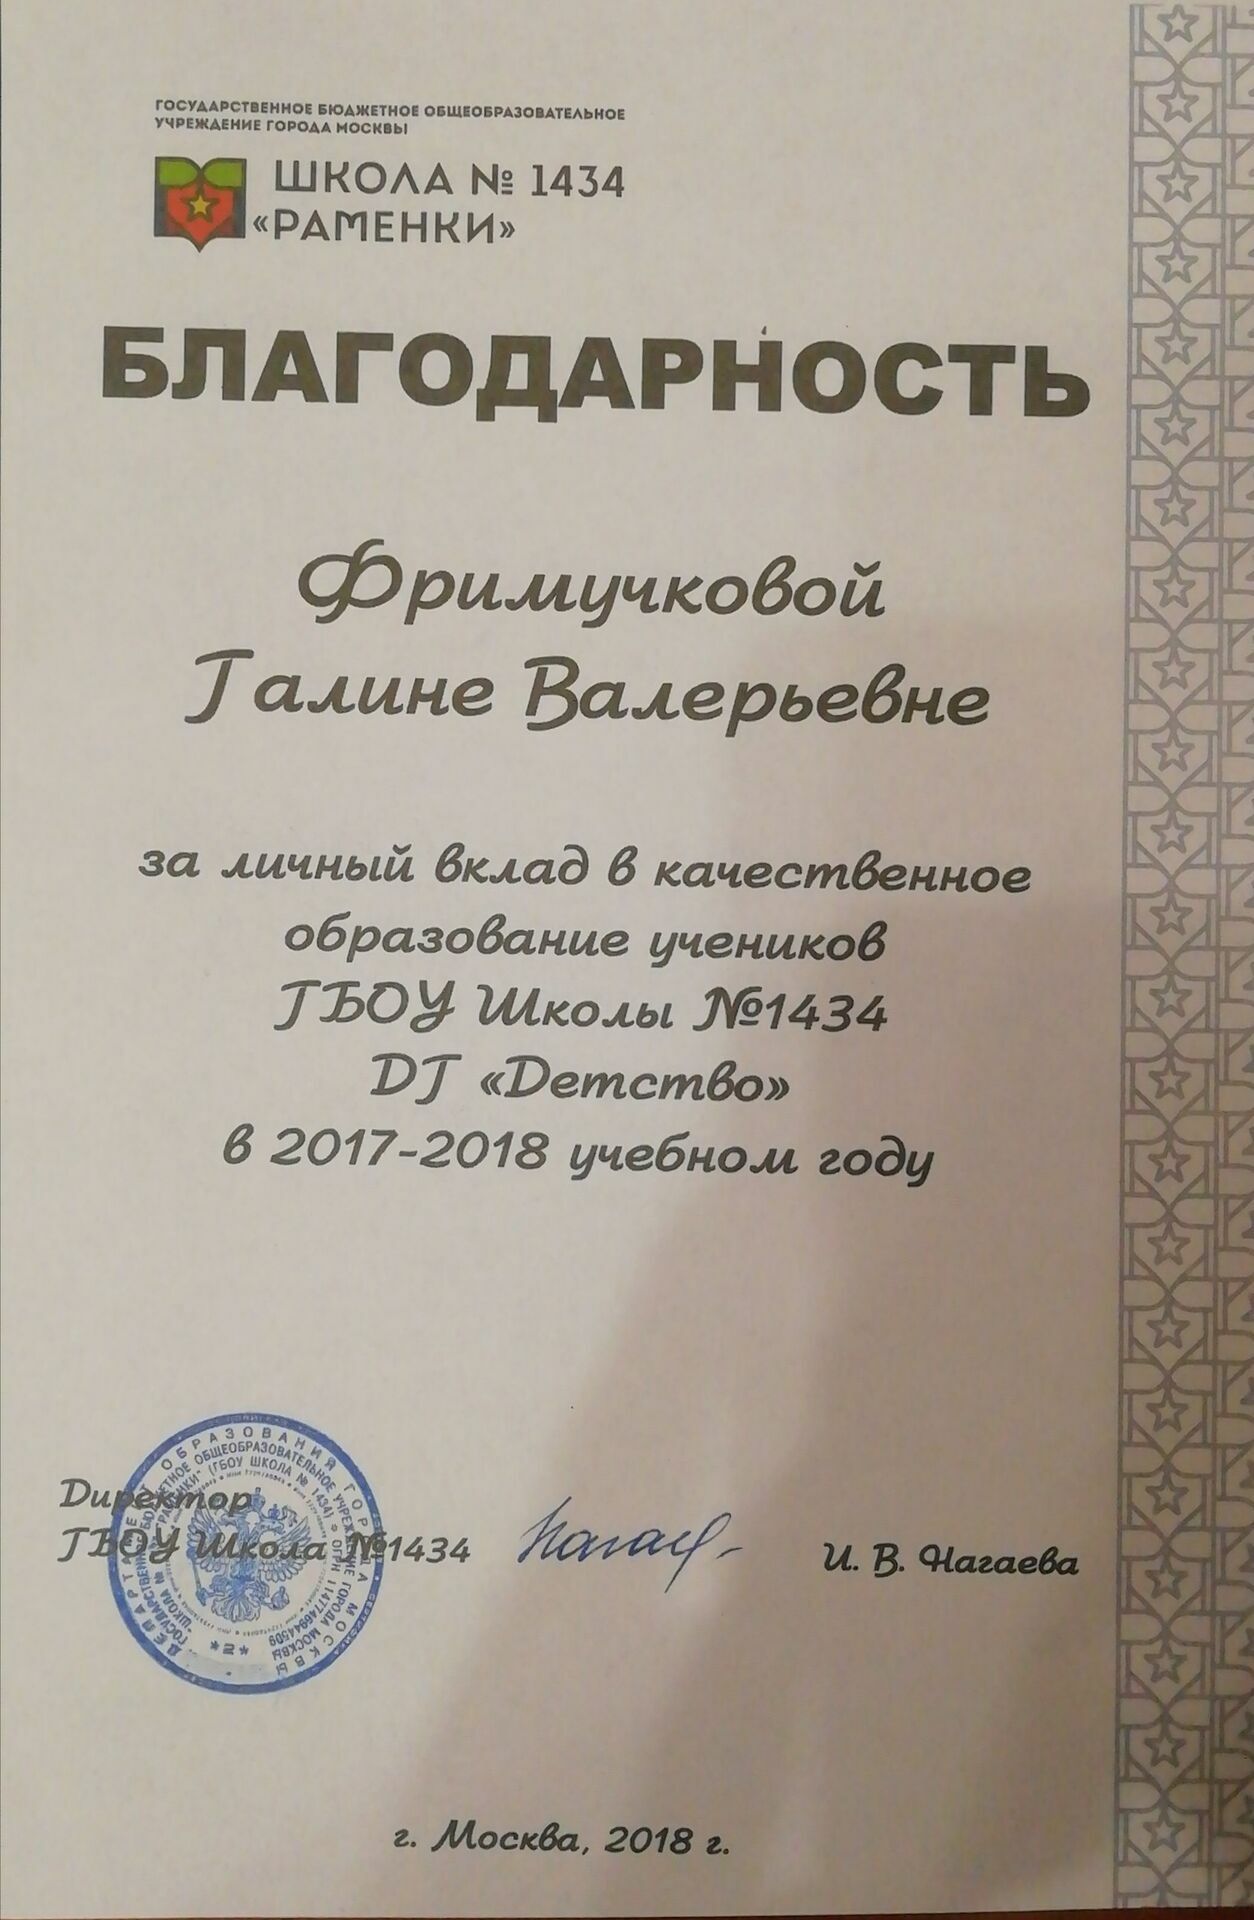 Подписано И. Нагаевой